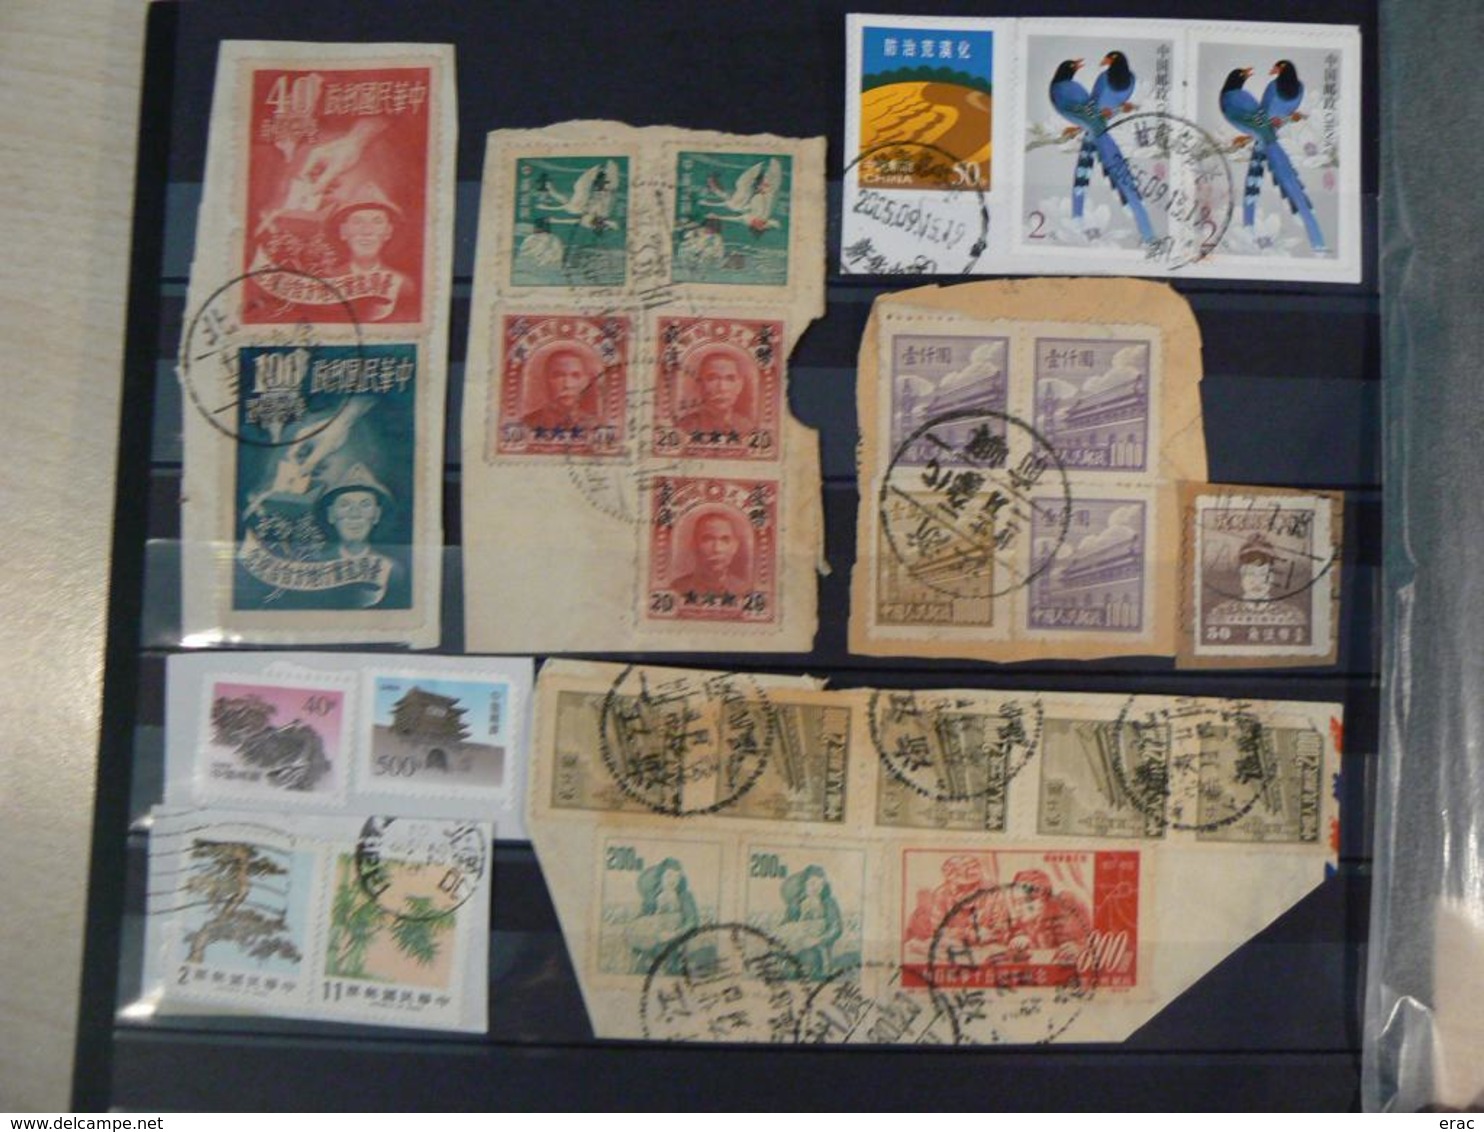 CHINE - Collection de timbres anciens et récents - Bon état général